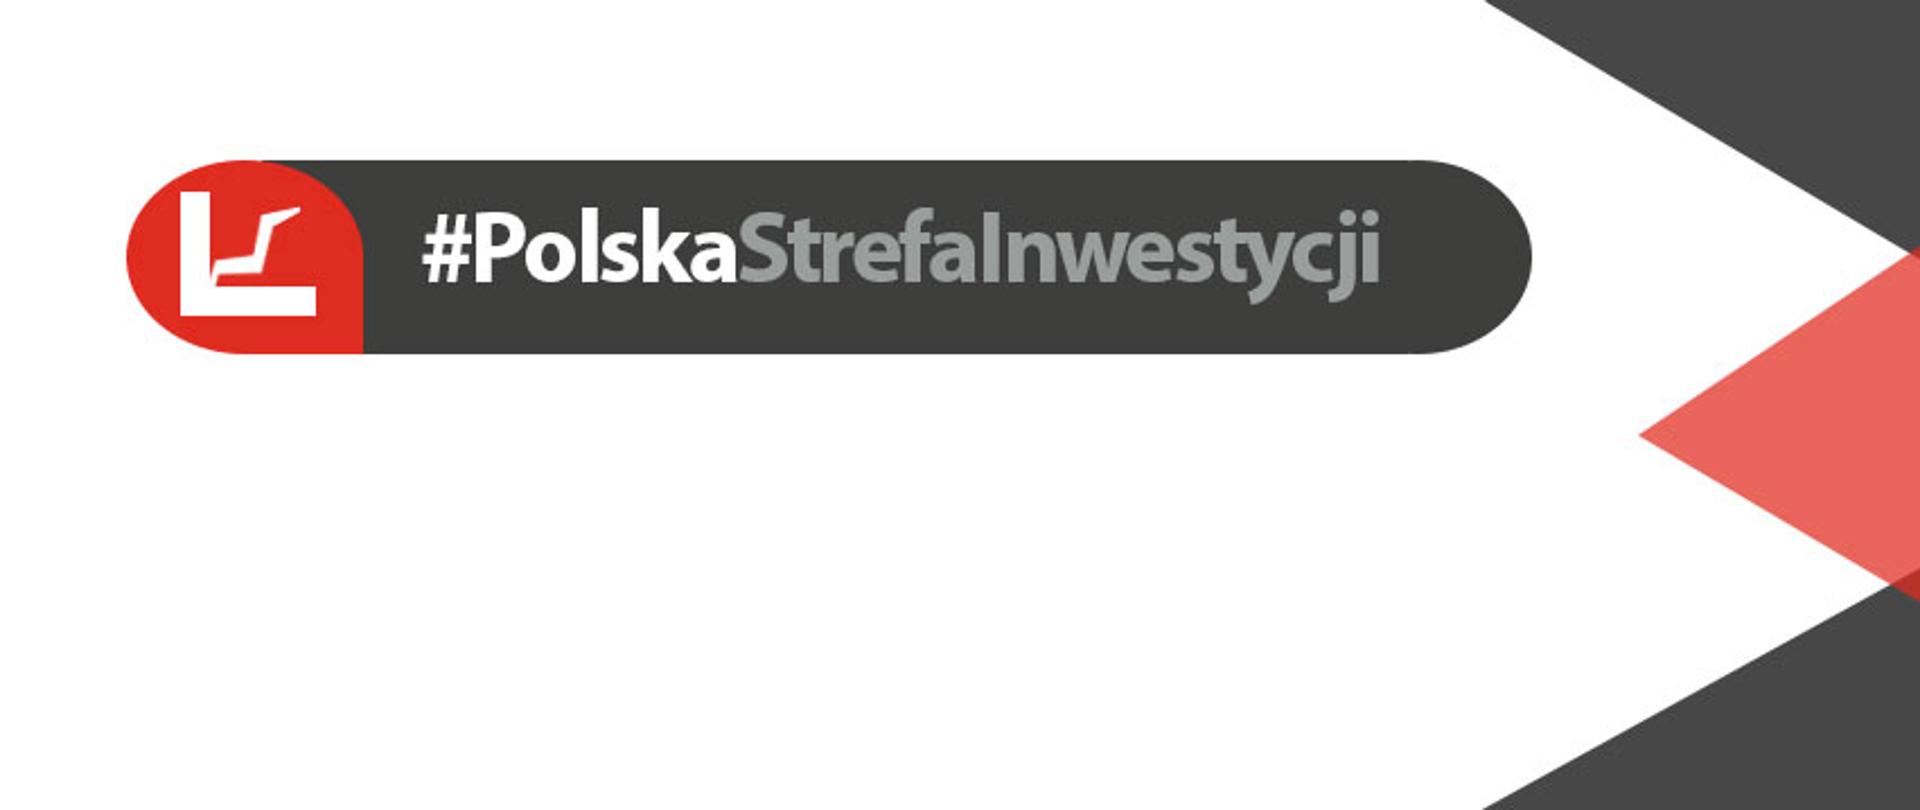 Polska atrakcyjną strefą inwestycyjną, zwolnienia podatkowe uzależnione od 3 jasnych zasad – to główne założenia dokumentu.